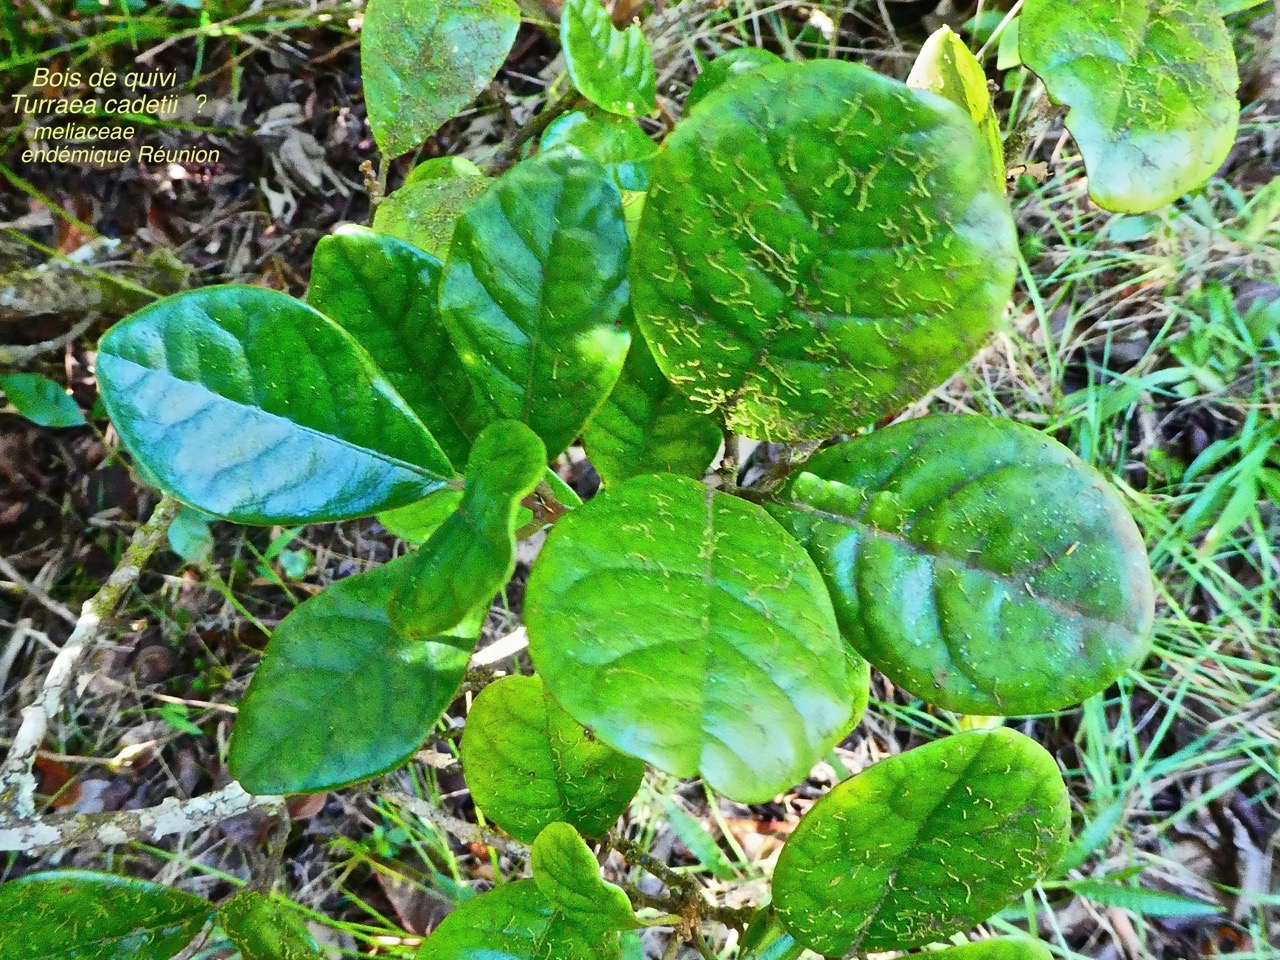 Bois de quivi . Turraea cadetii . meliaceae P1580333